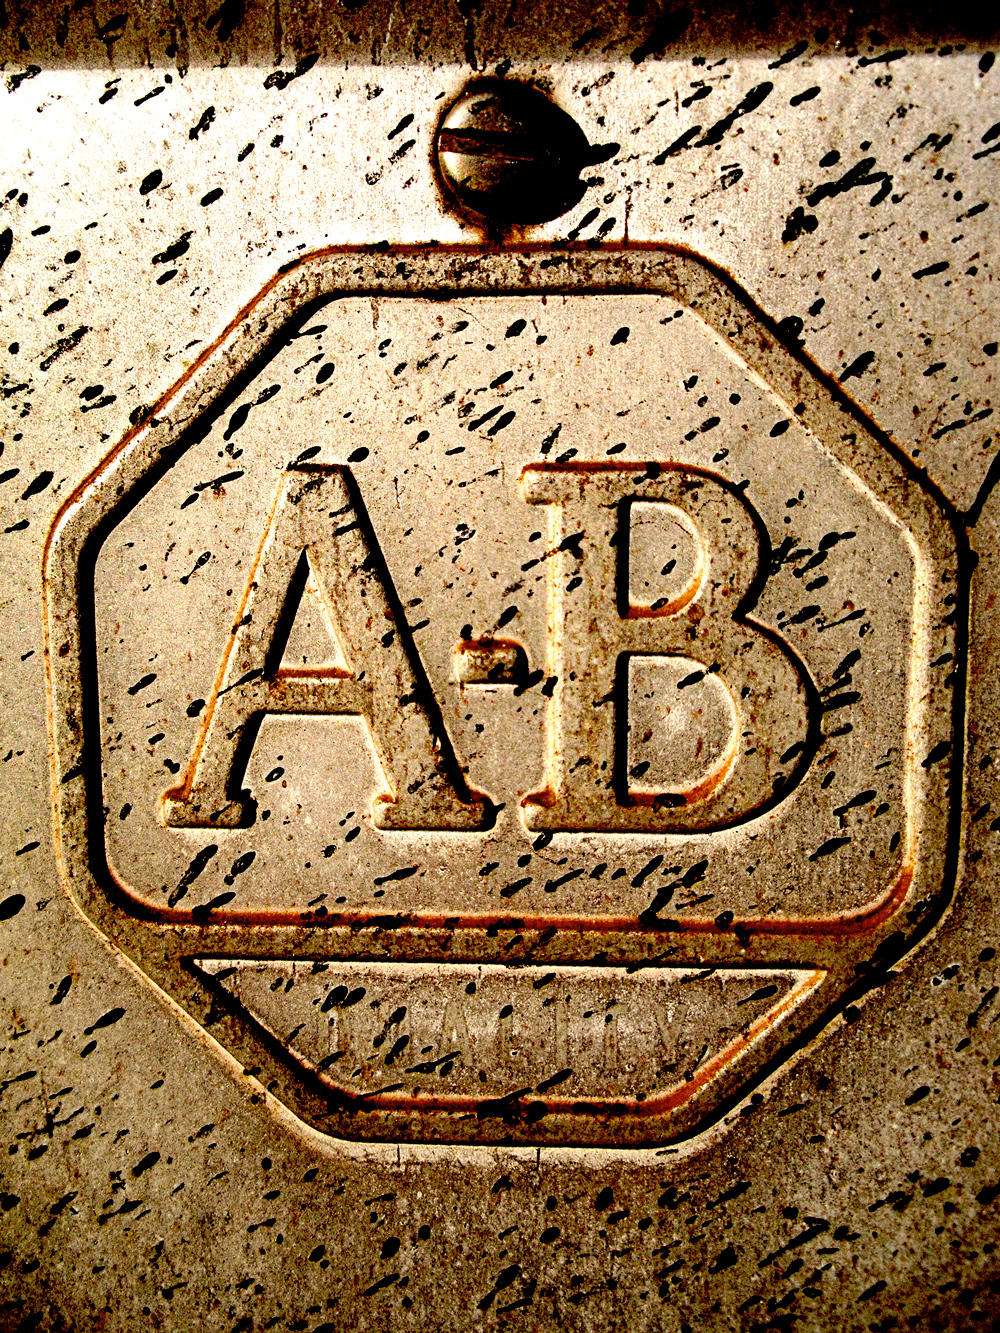 A-B by AmandaMuses